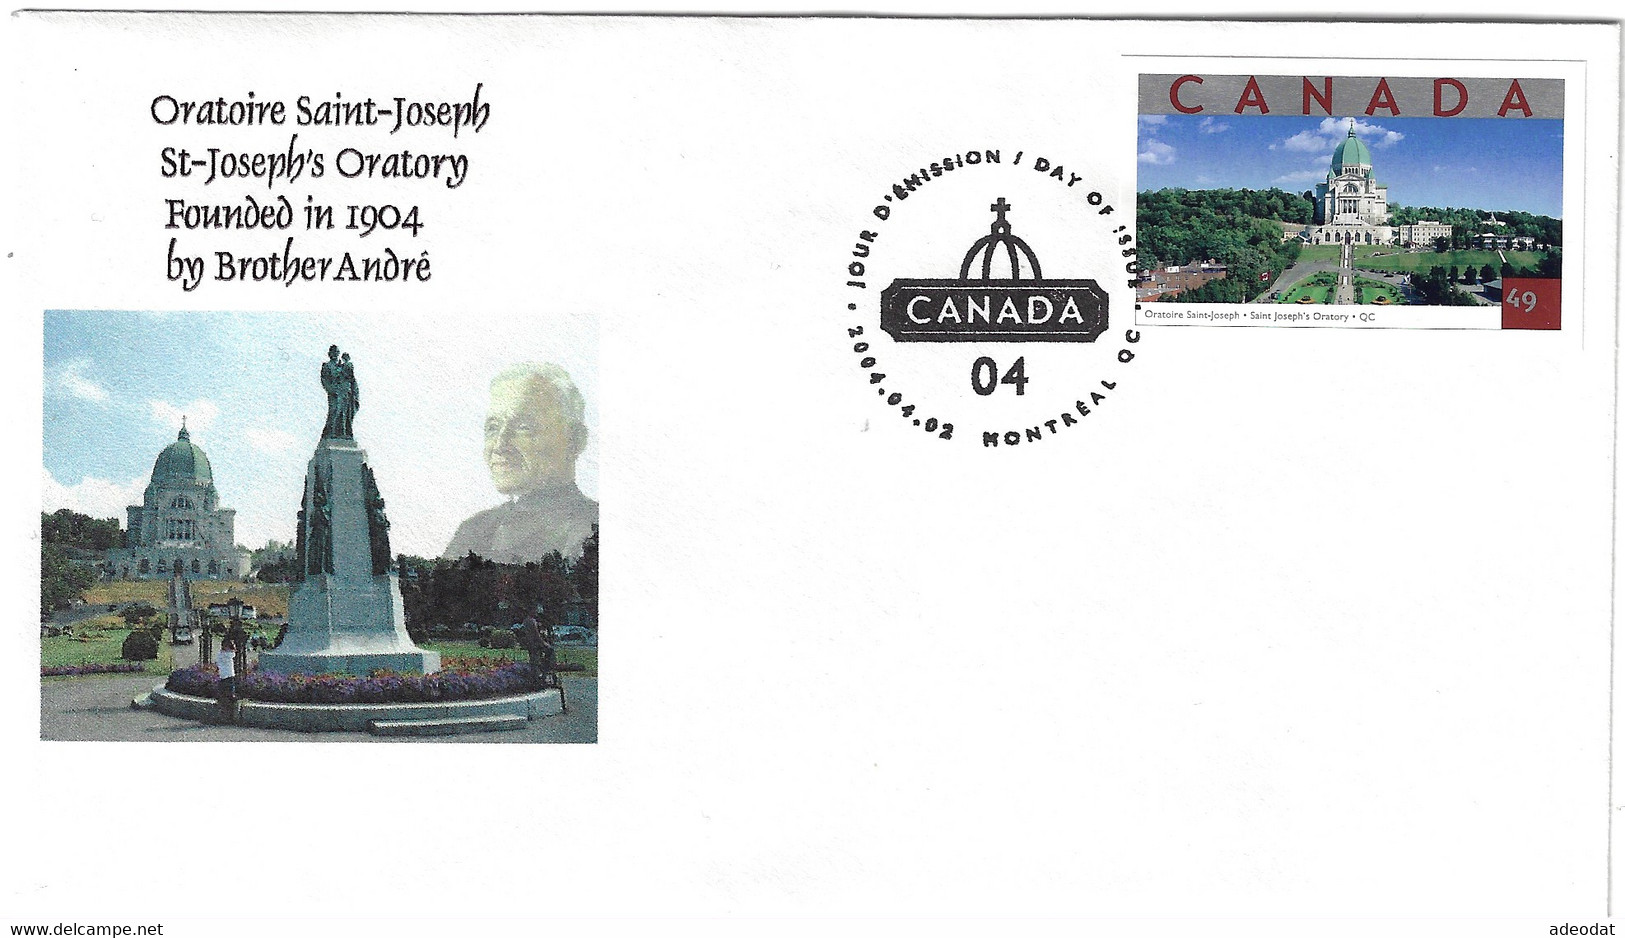 CANADA 2004 SOUVENIR COVER ST.JOSEPH ORATORY CENTENNIAL - Commemorative Covers